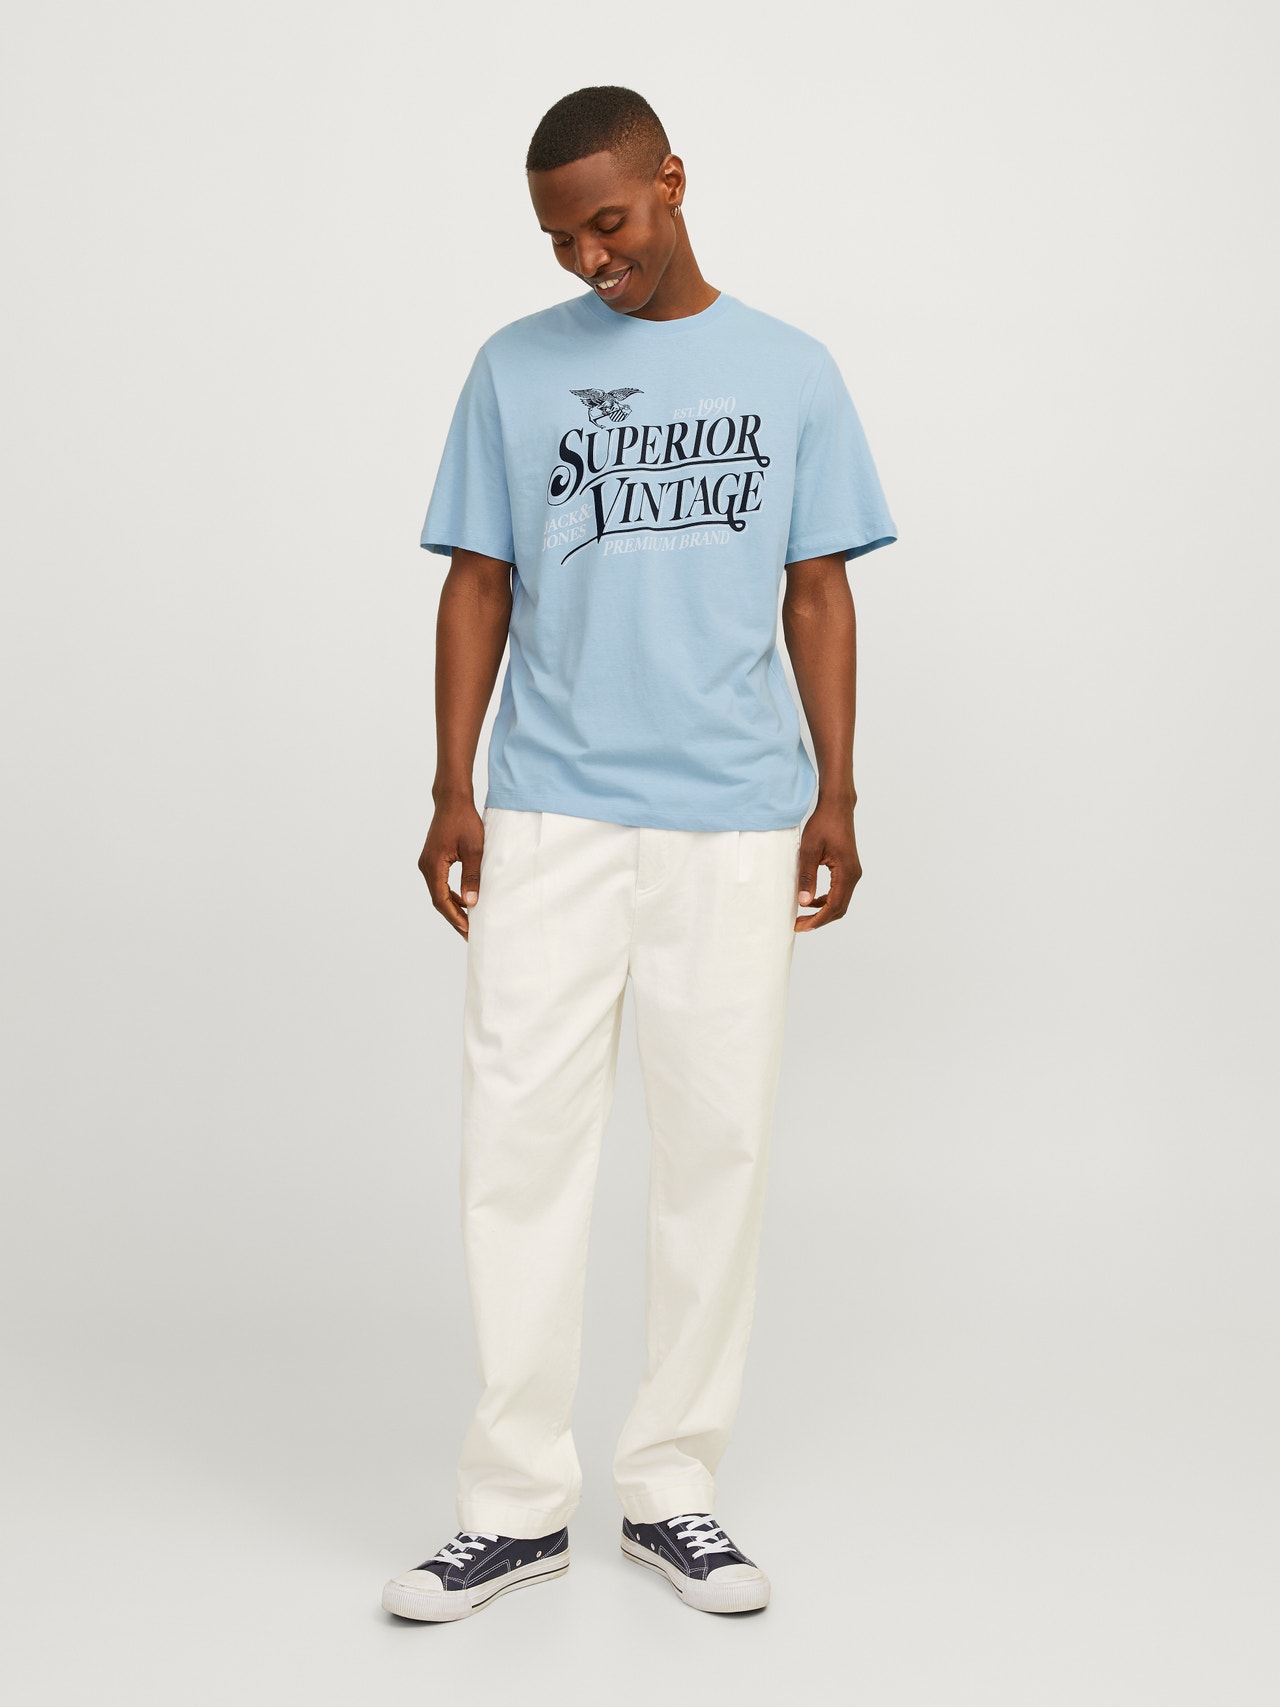 Jack & Jones Gedruckt Rundhals T-shirt -Cerulean - 12255163